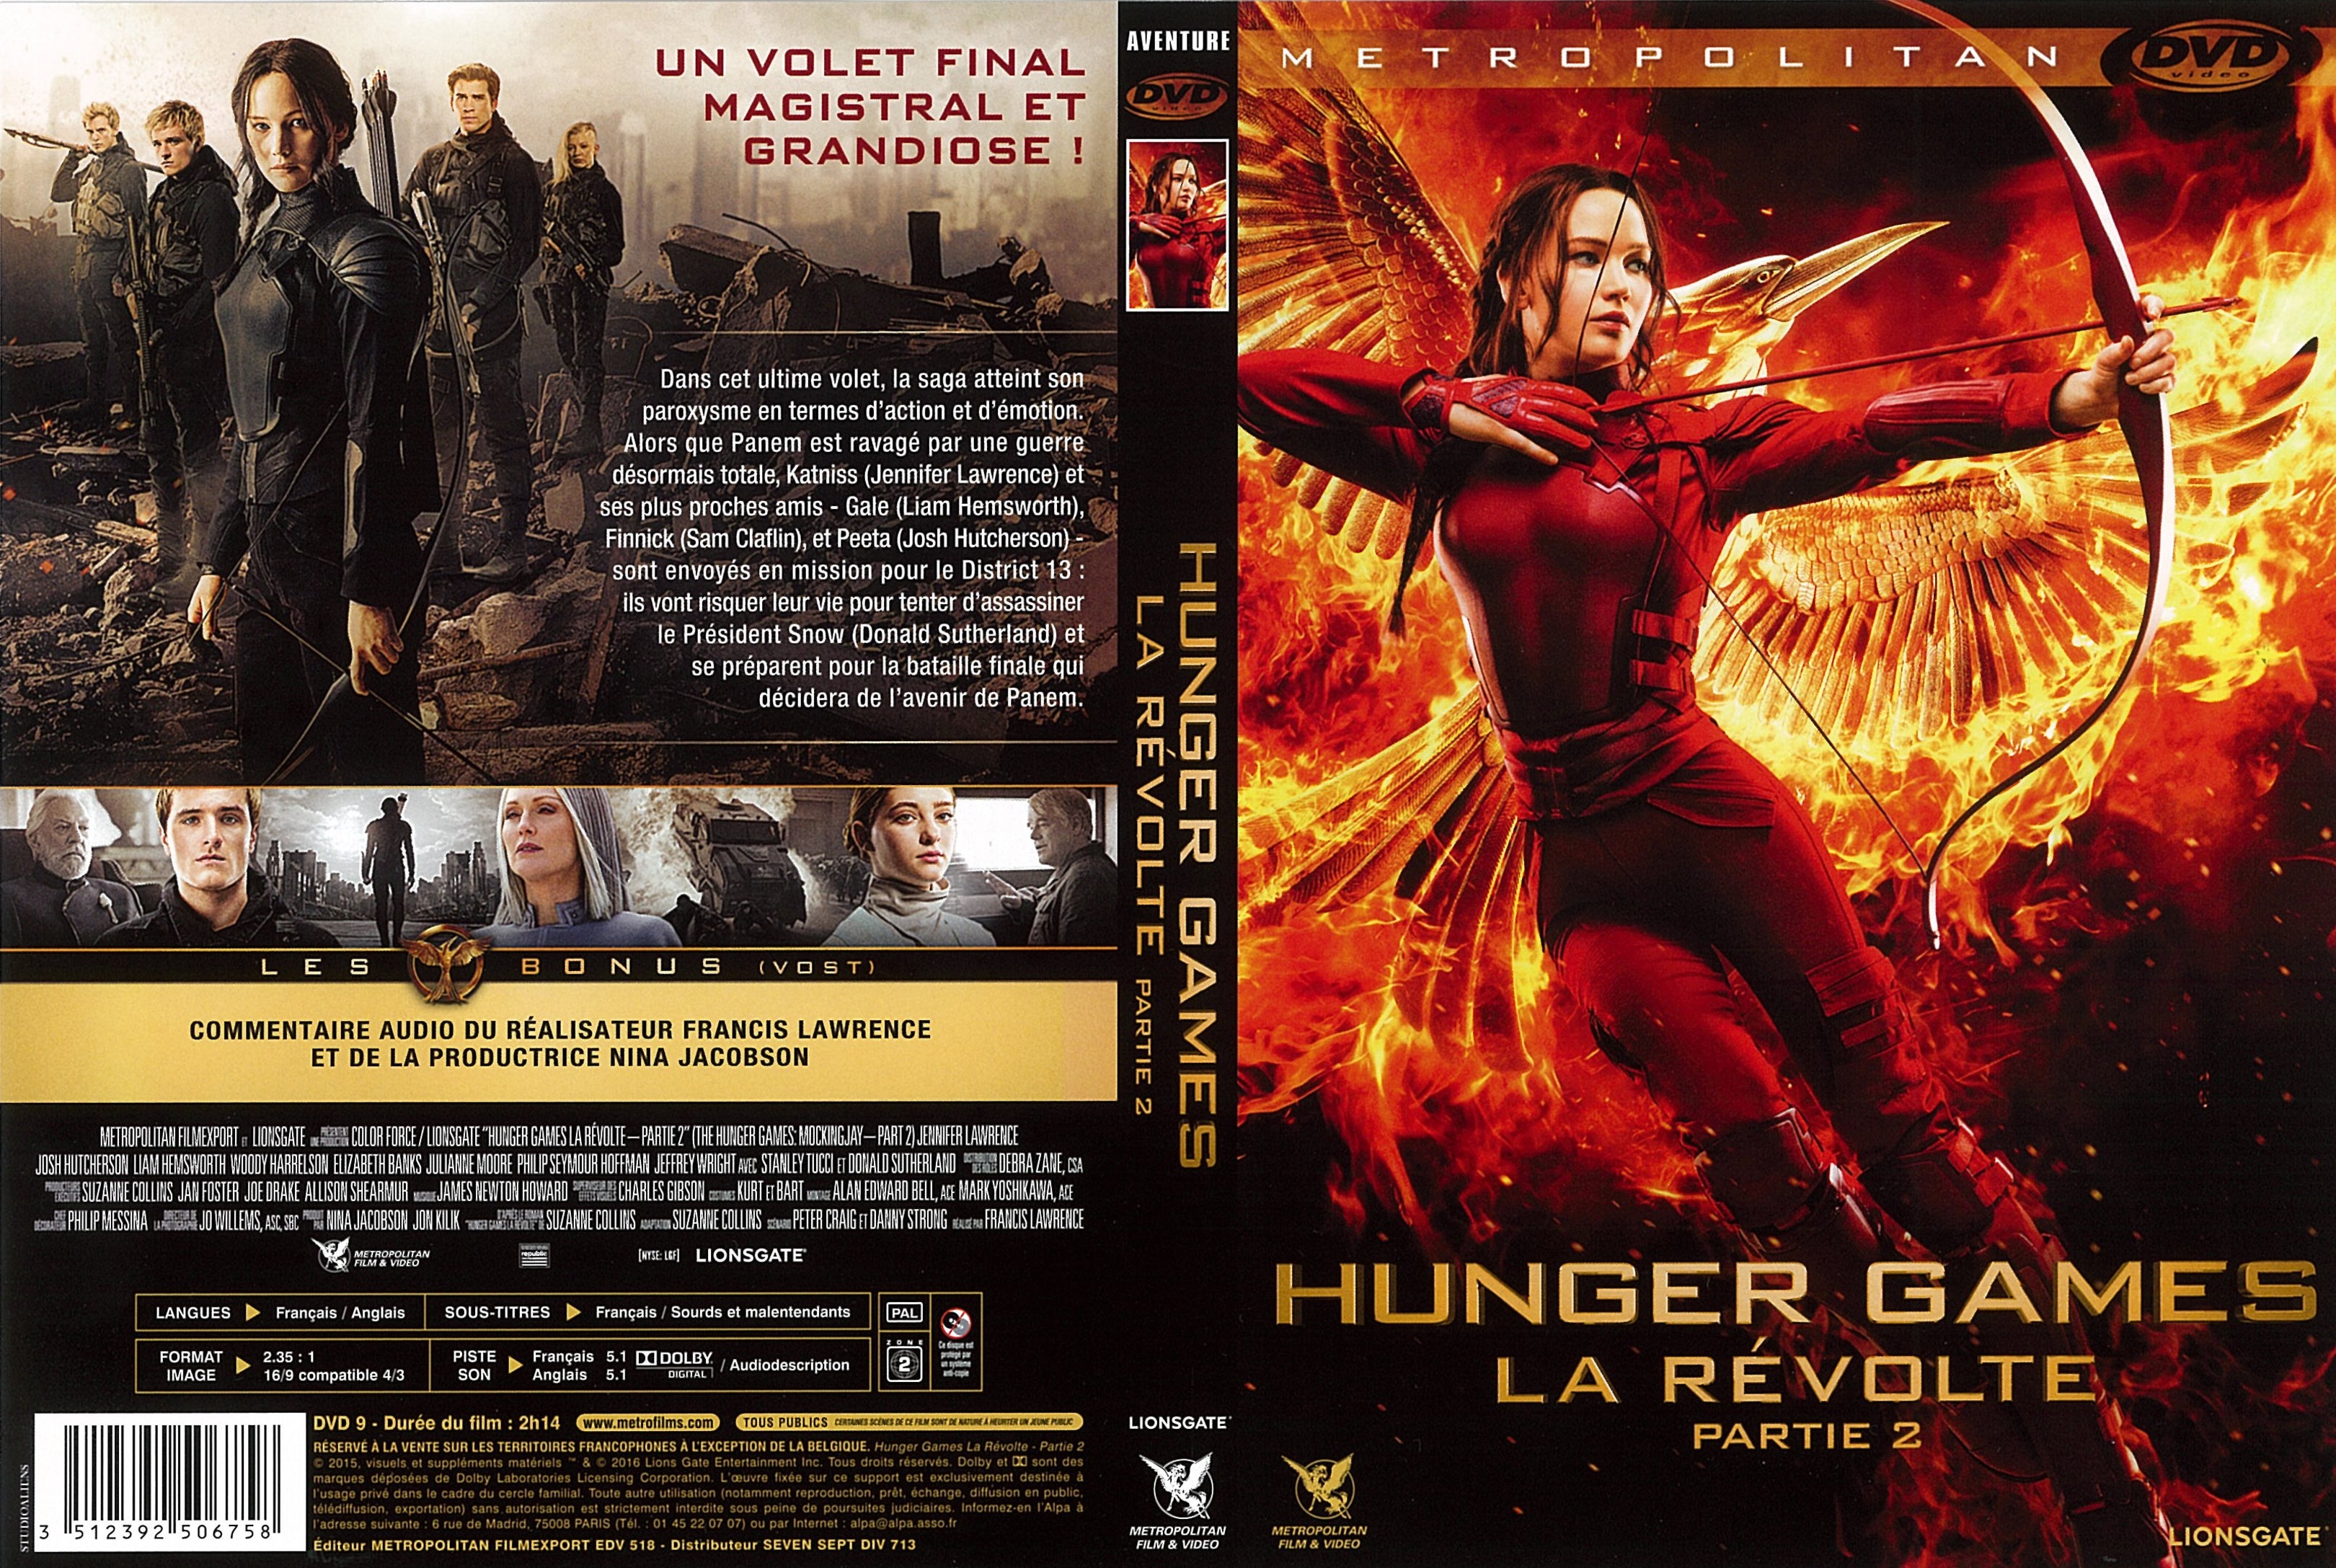 Jaquette DVD Hunger Games La Rvolte : Partie 2